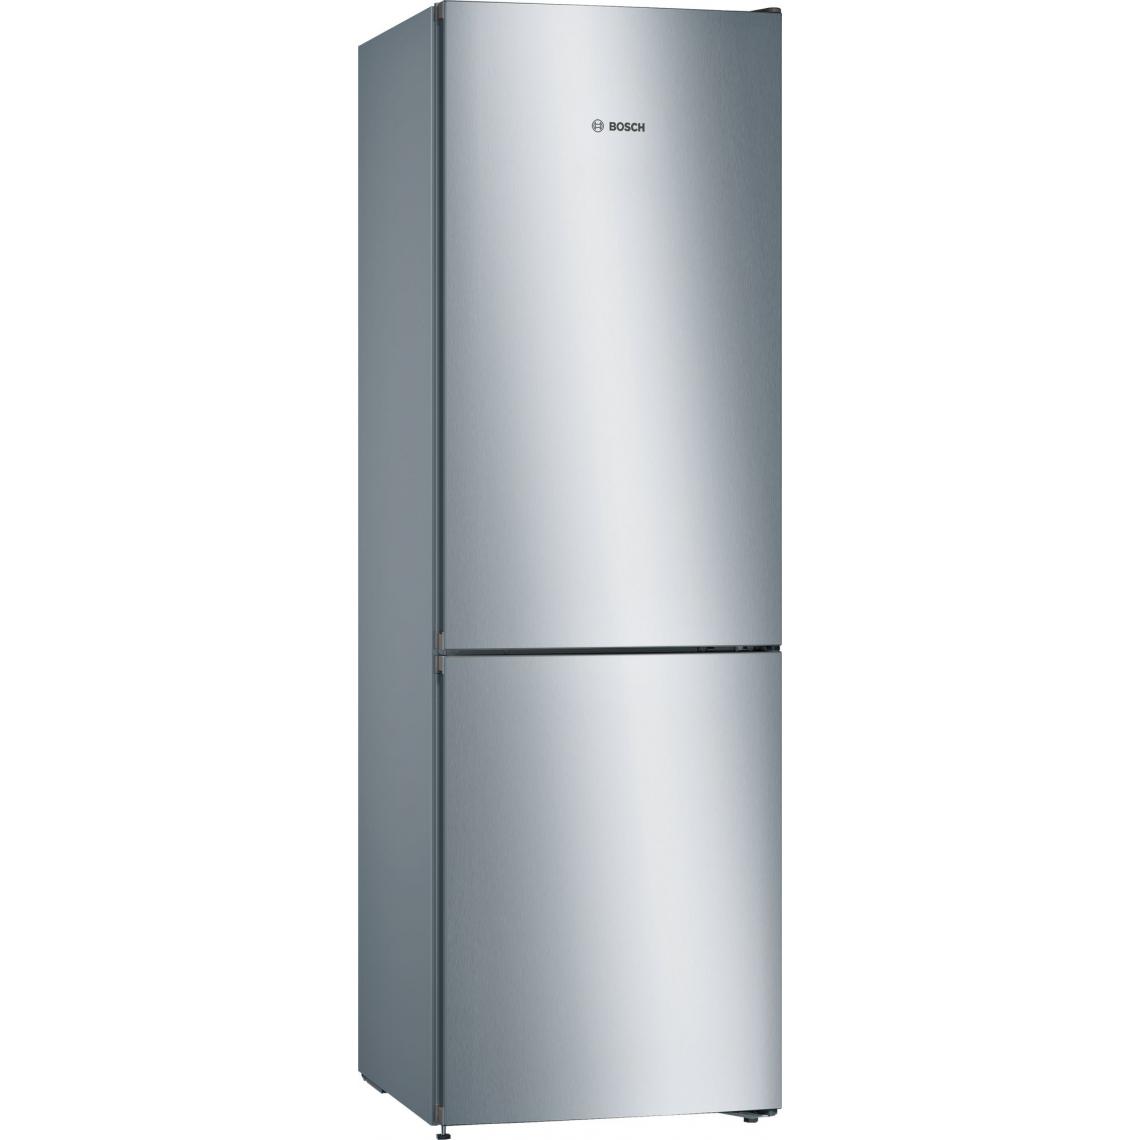 Bosch - BOSCH - KGN36VLED - Réfrigérateur - combiné - pose-libre - SER4 - inox - look - Classe - énergie - A++ - Classe - climatique: - SN- - Réfrigérateur